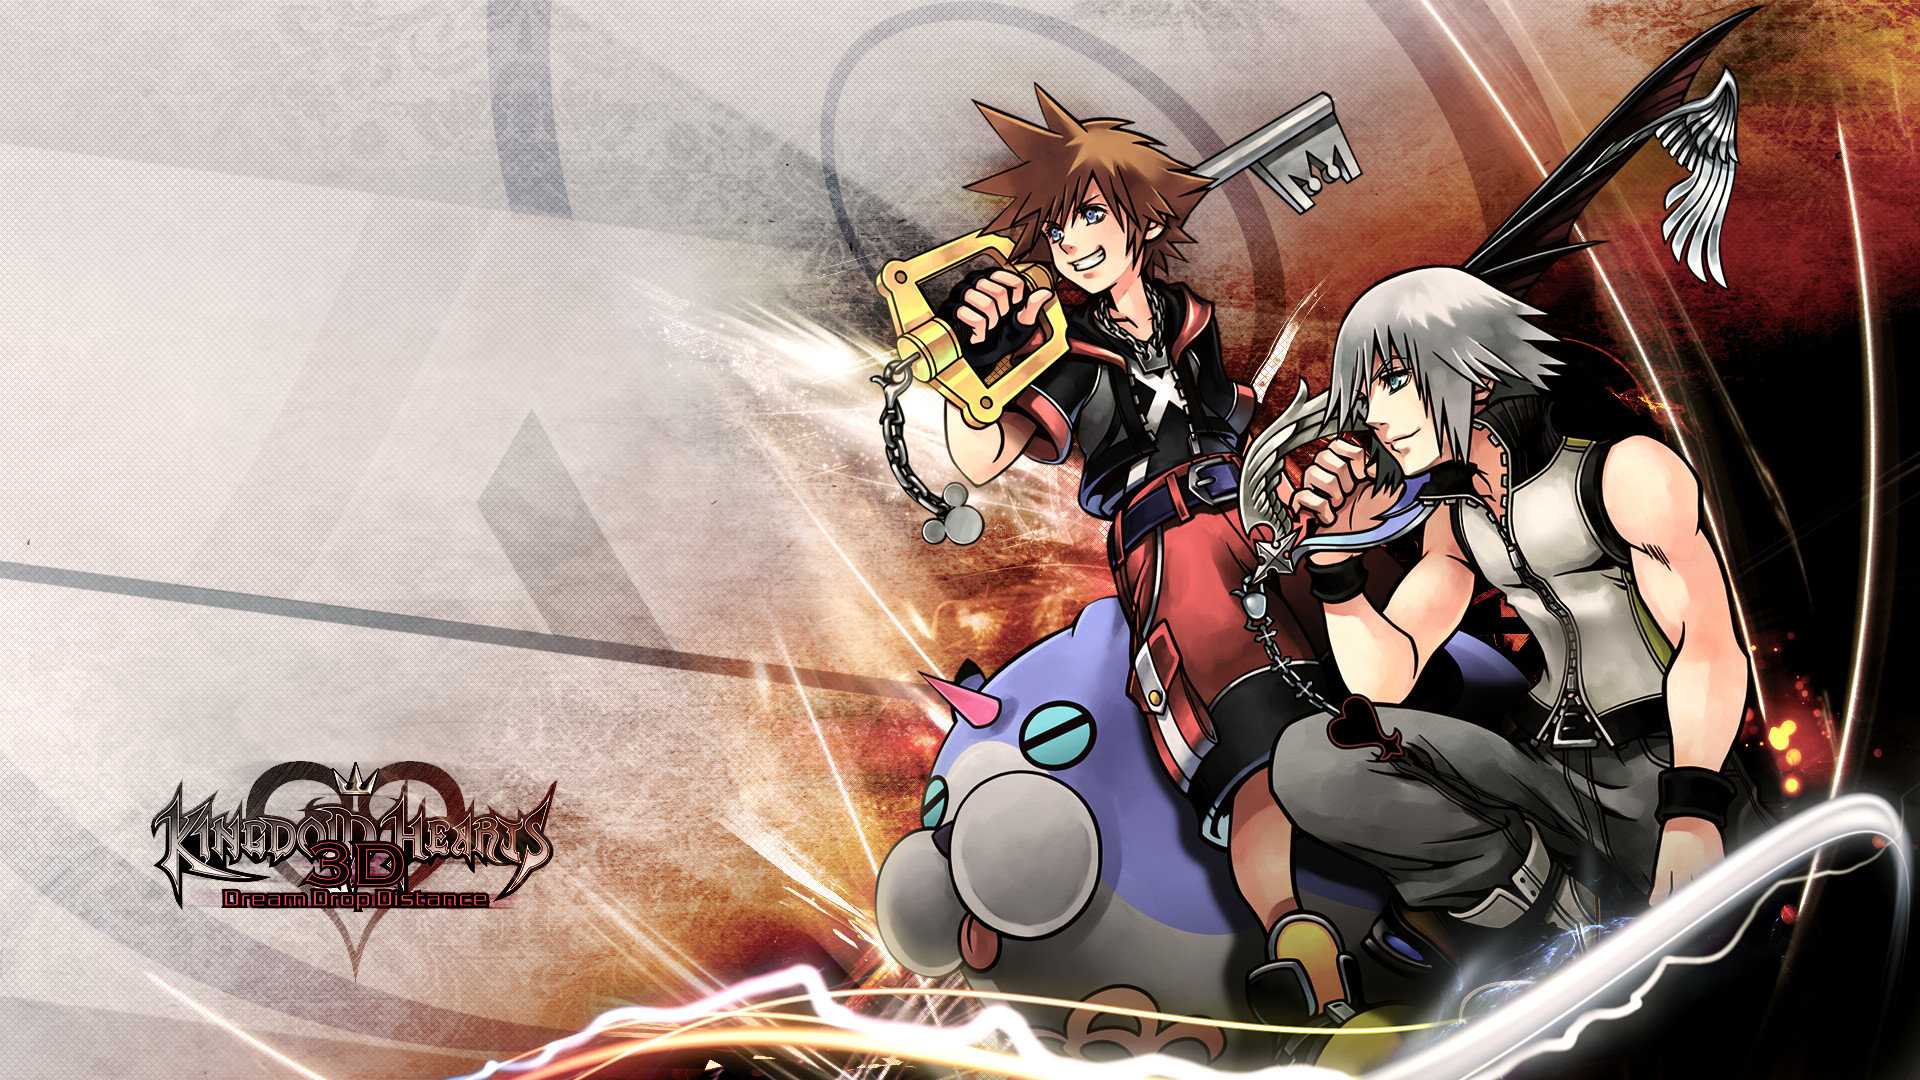 Download full hd 1920x1080 Kingdom Hearts desktop wallpaper ID:110079 for free